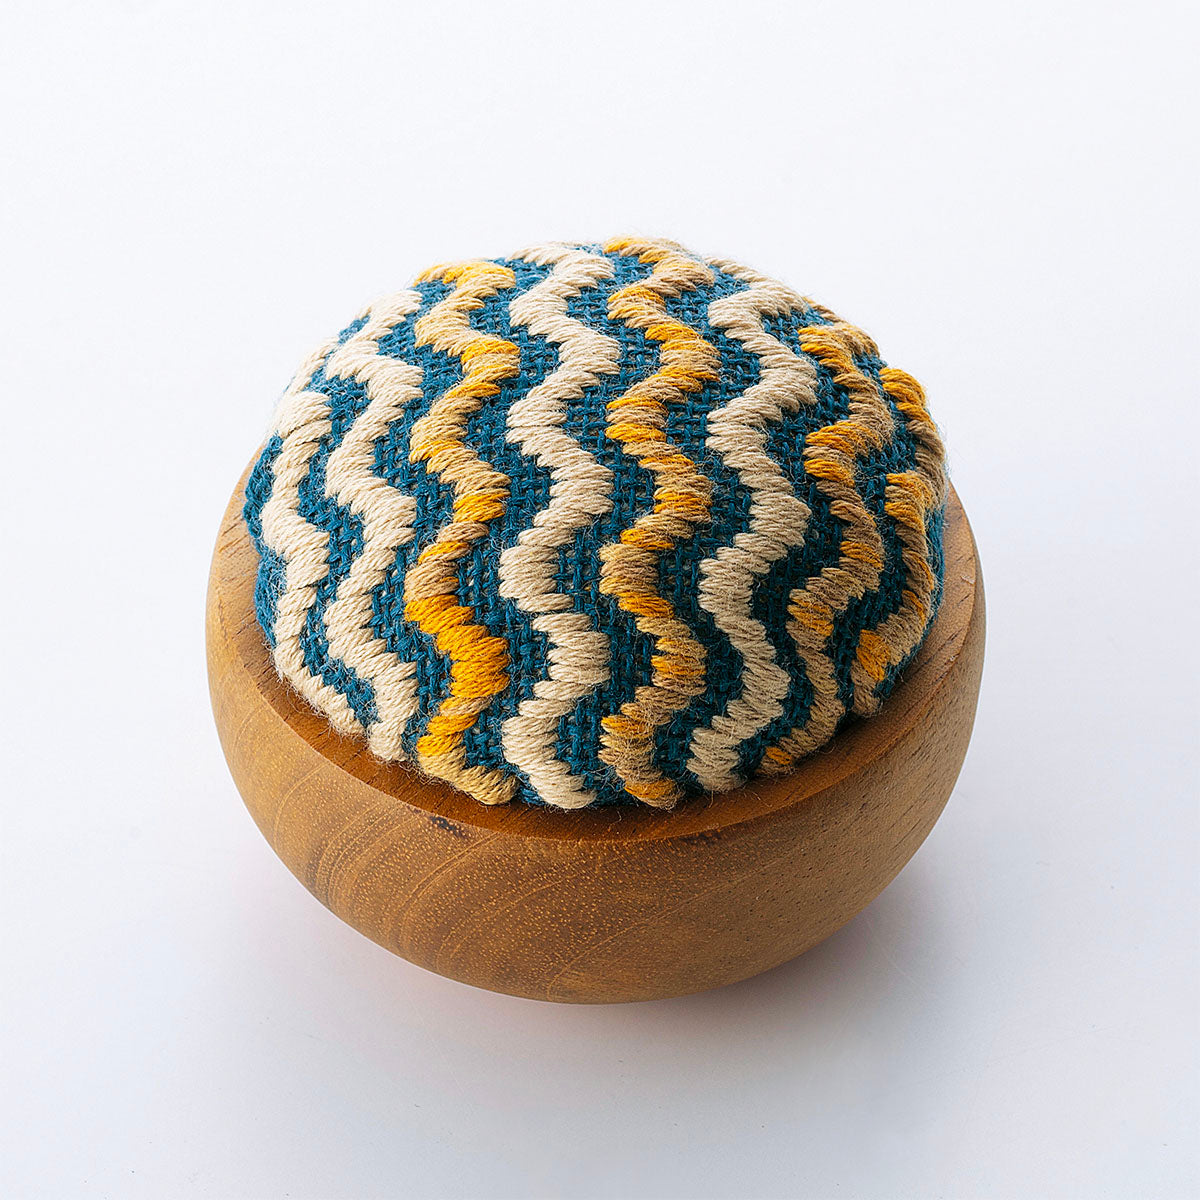 Kogin Embroidery Pincushion Bowl Kit